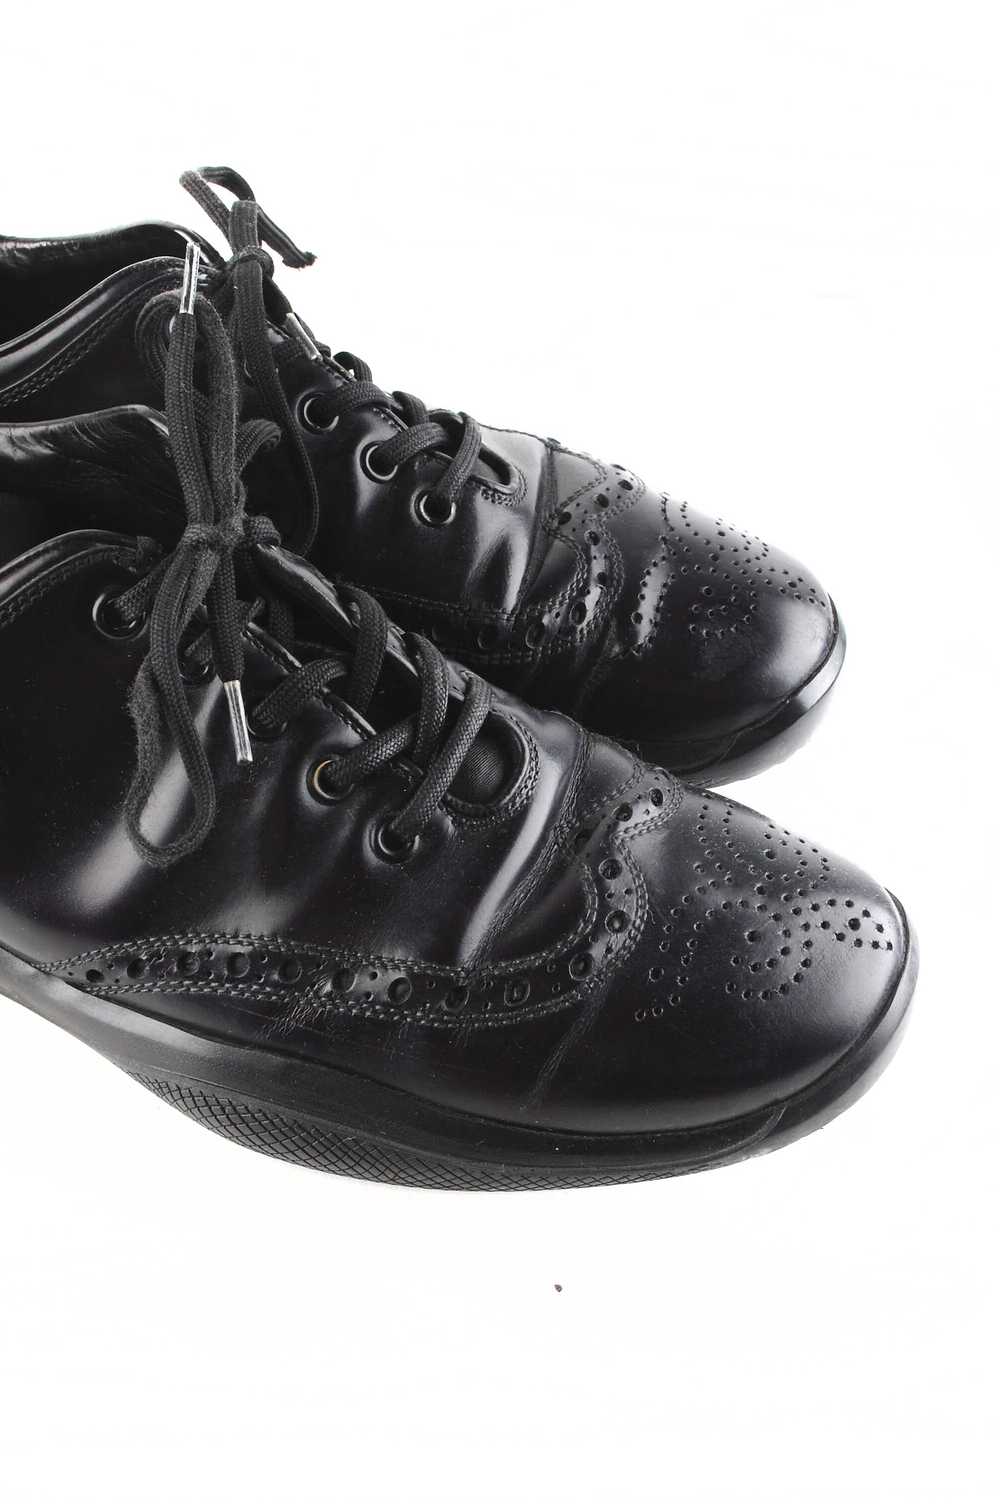 Prada Original Prada Leather Oxford Shoes sz.42EU… - image 8